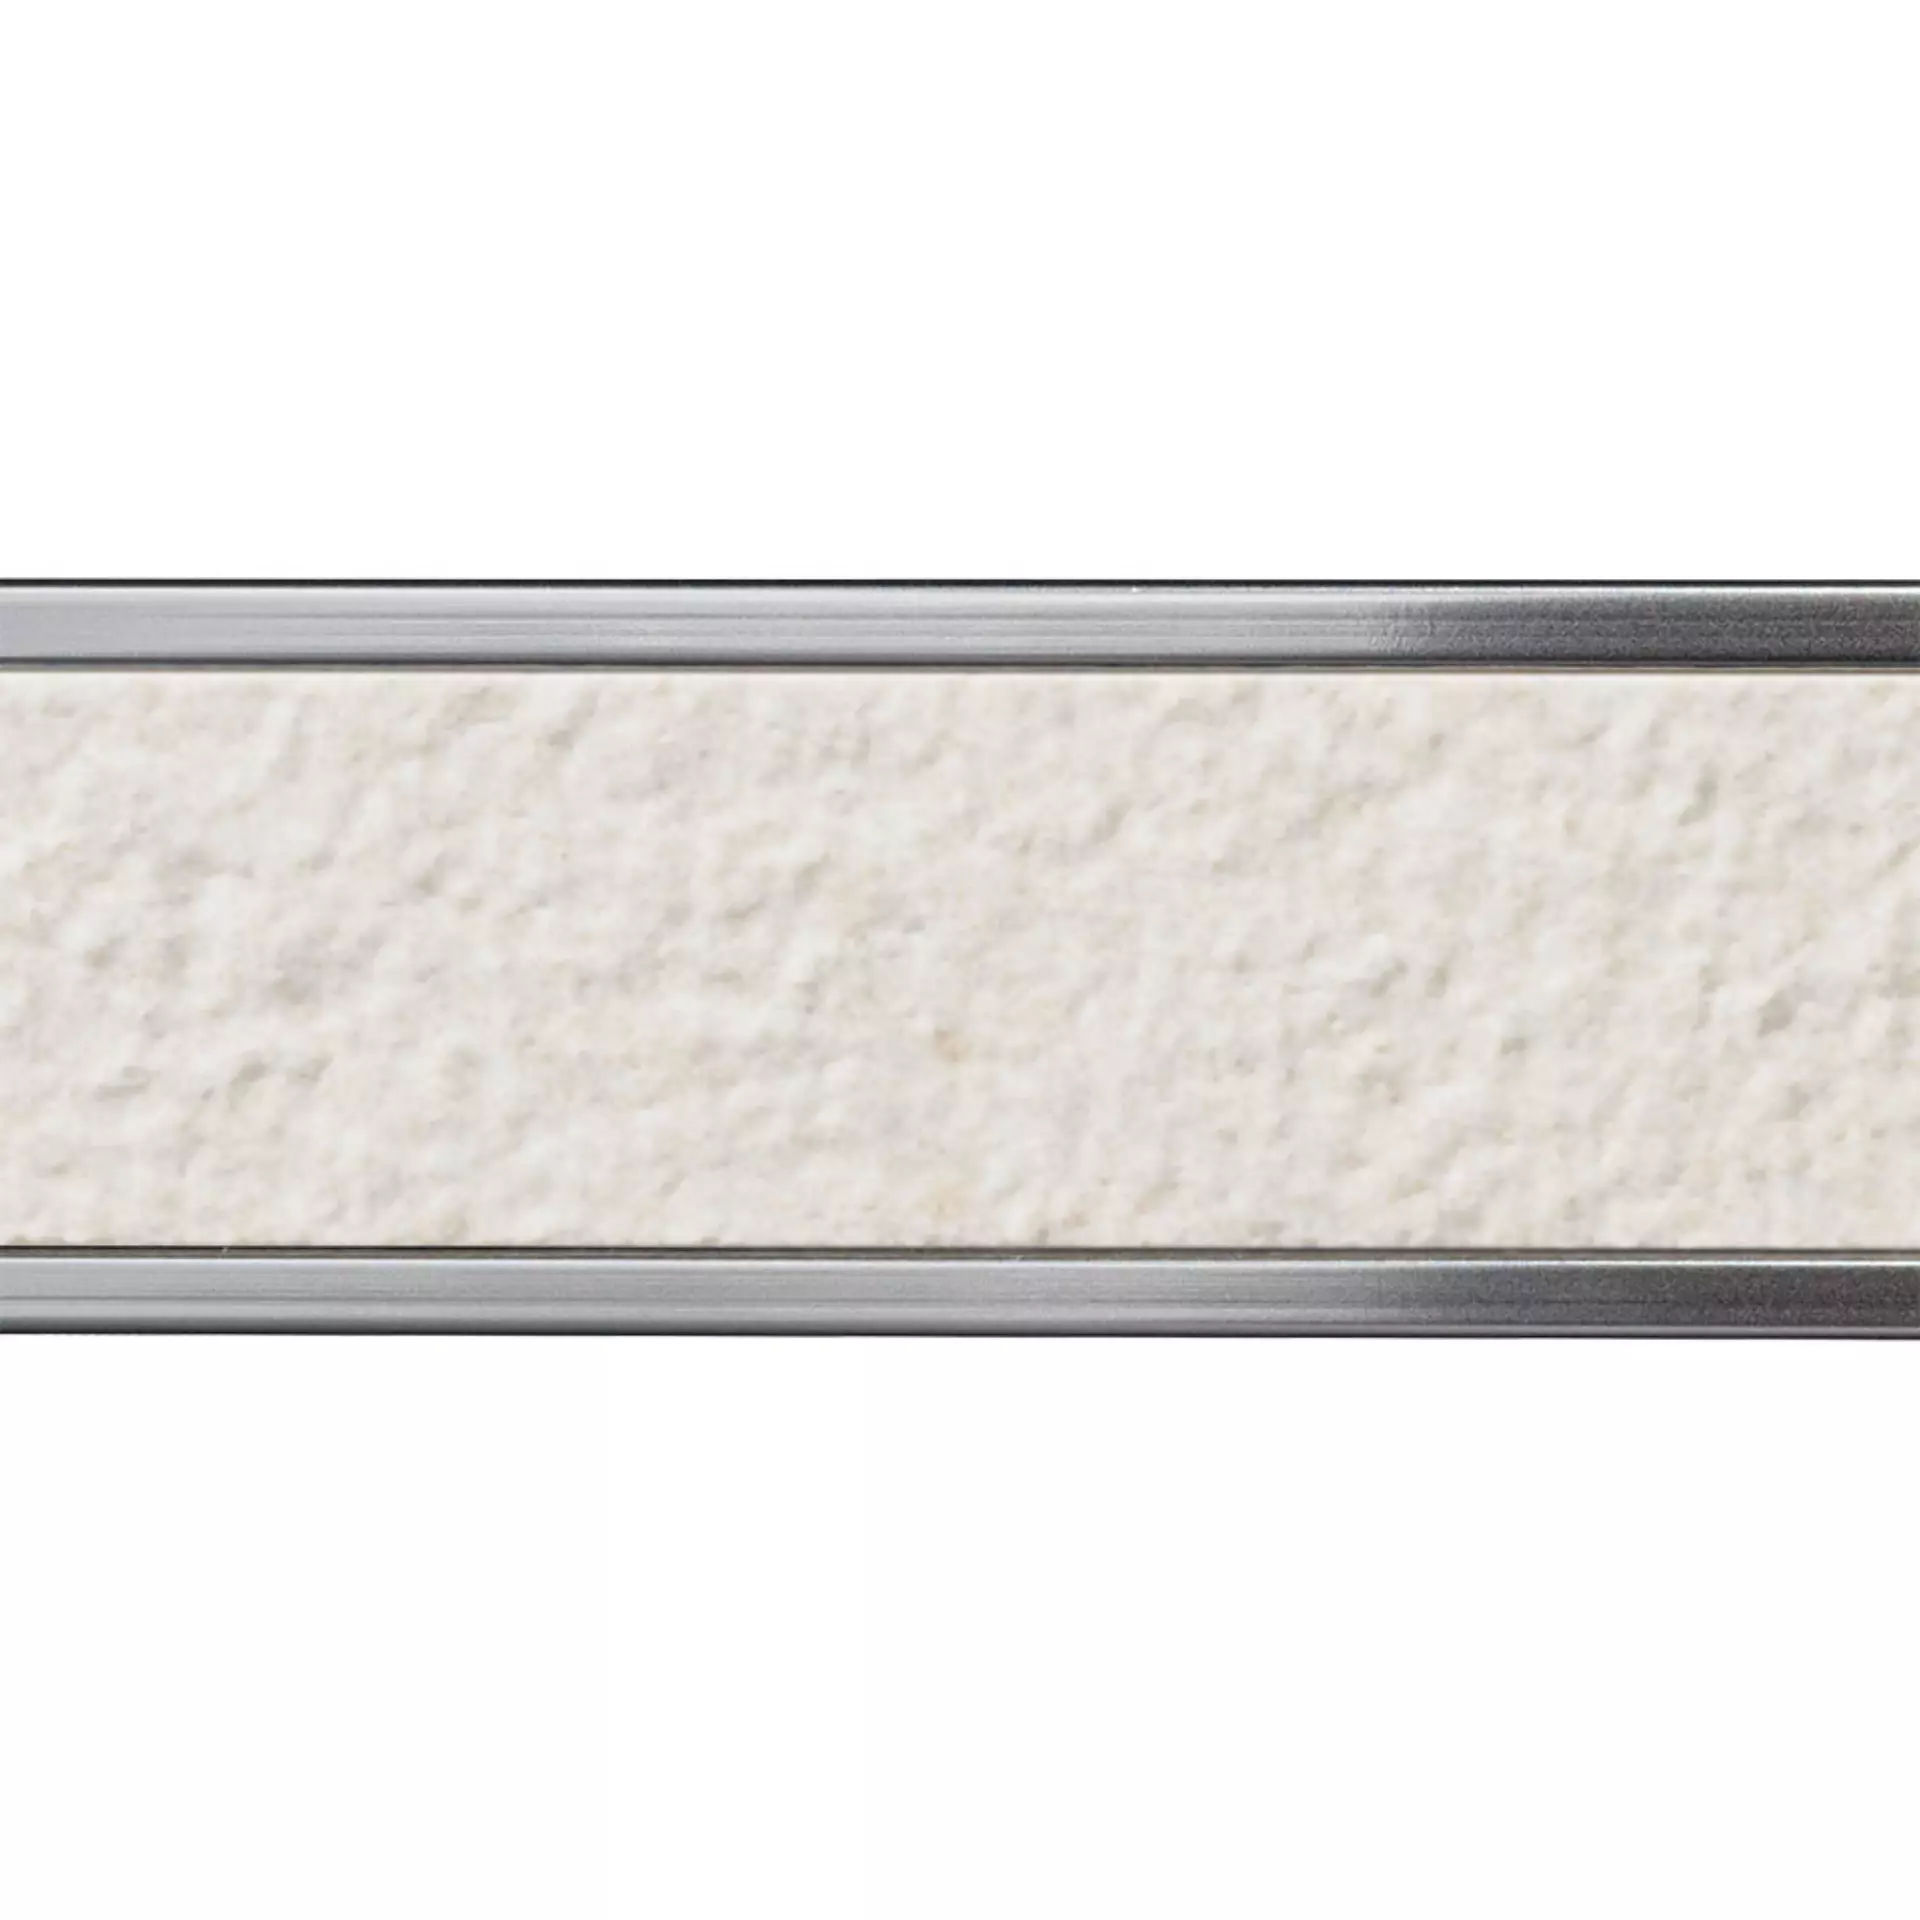 Italgraniti Silver Grain White Bocciardato Border Argento SI01LB1 2x120cm rectified